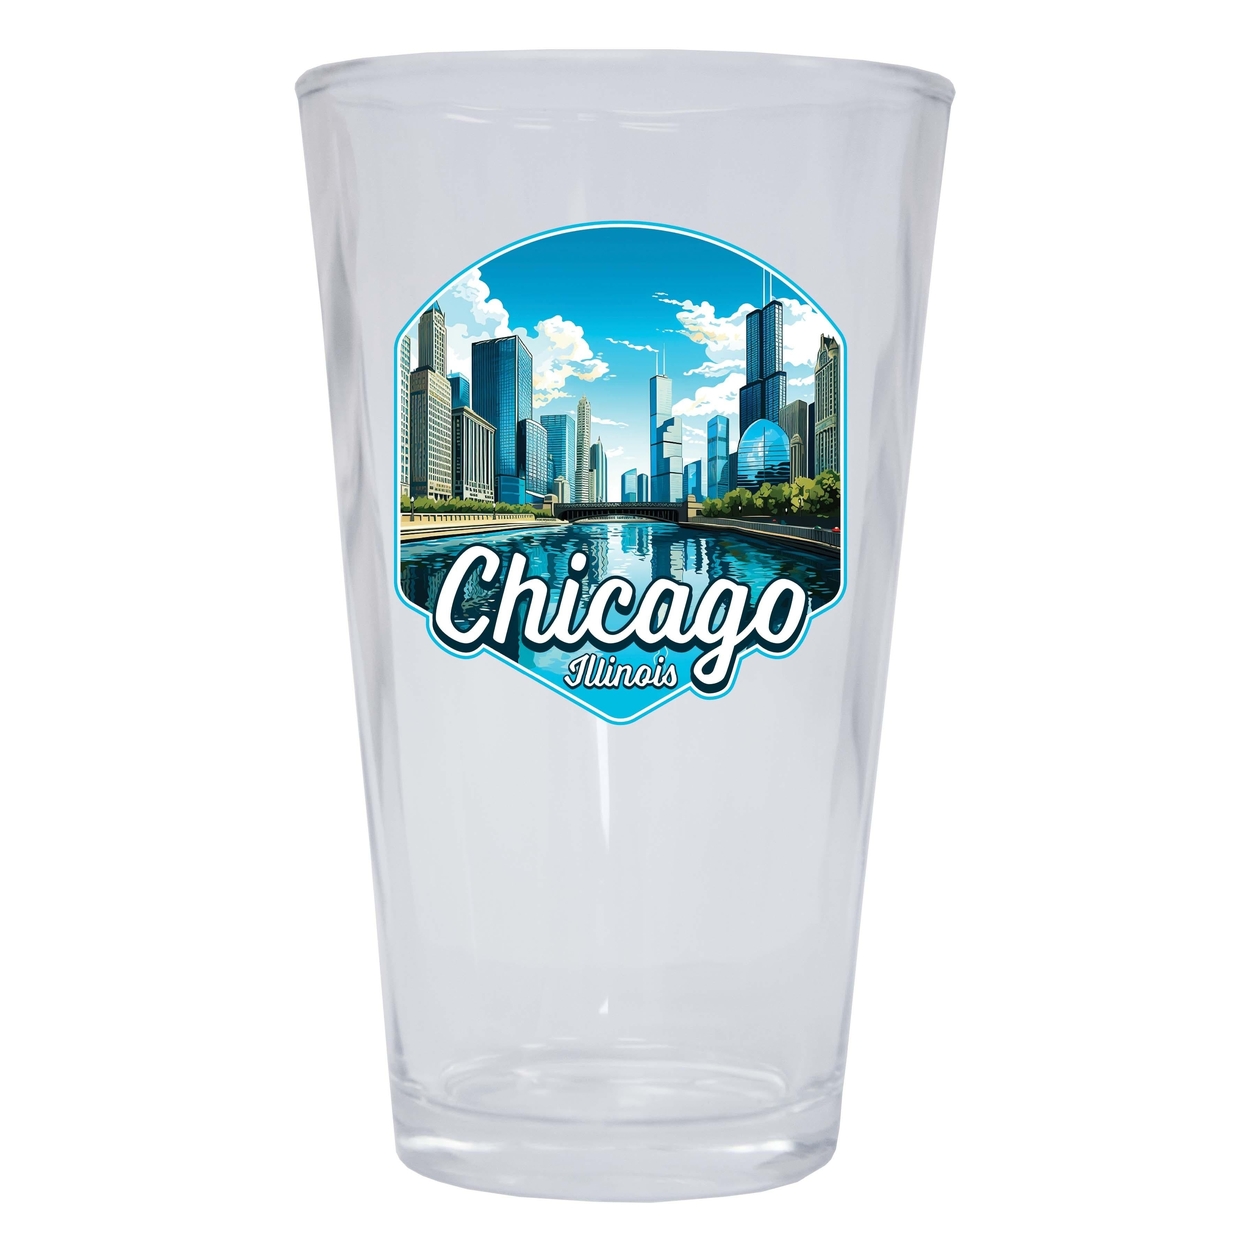 Chicago Illinois A Souvenir 16 Oz Pint Glass - 4-Pack